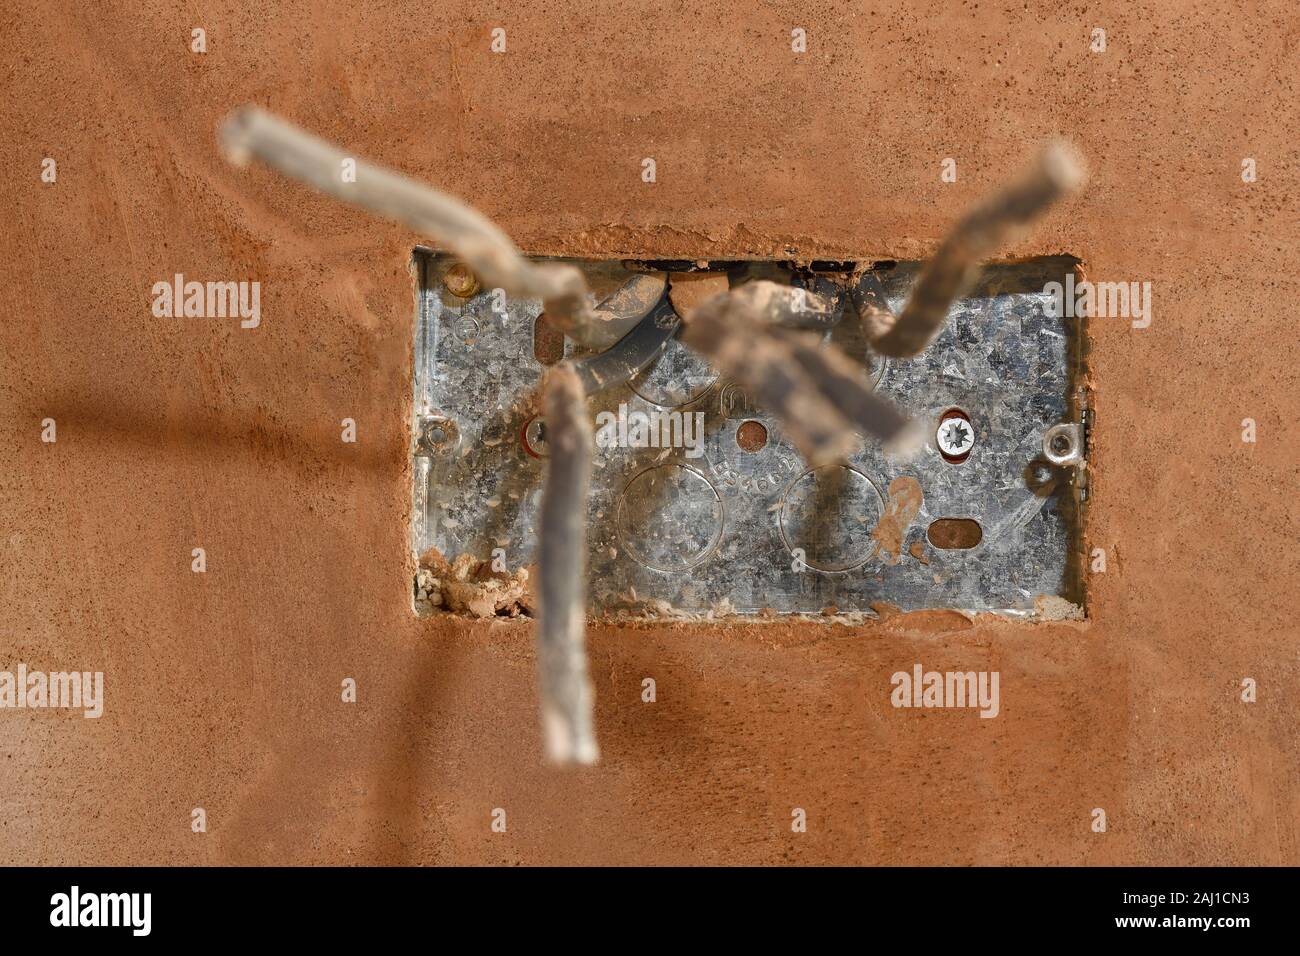 Einen ersten fix Steckdose in einem frisch Verputzte Wand Stockfoto